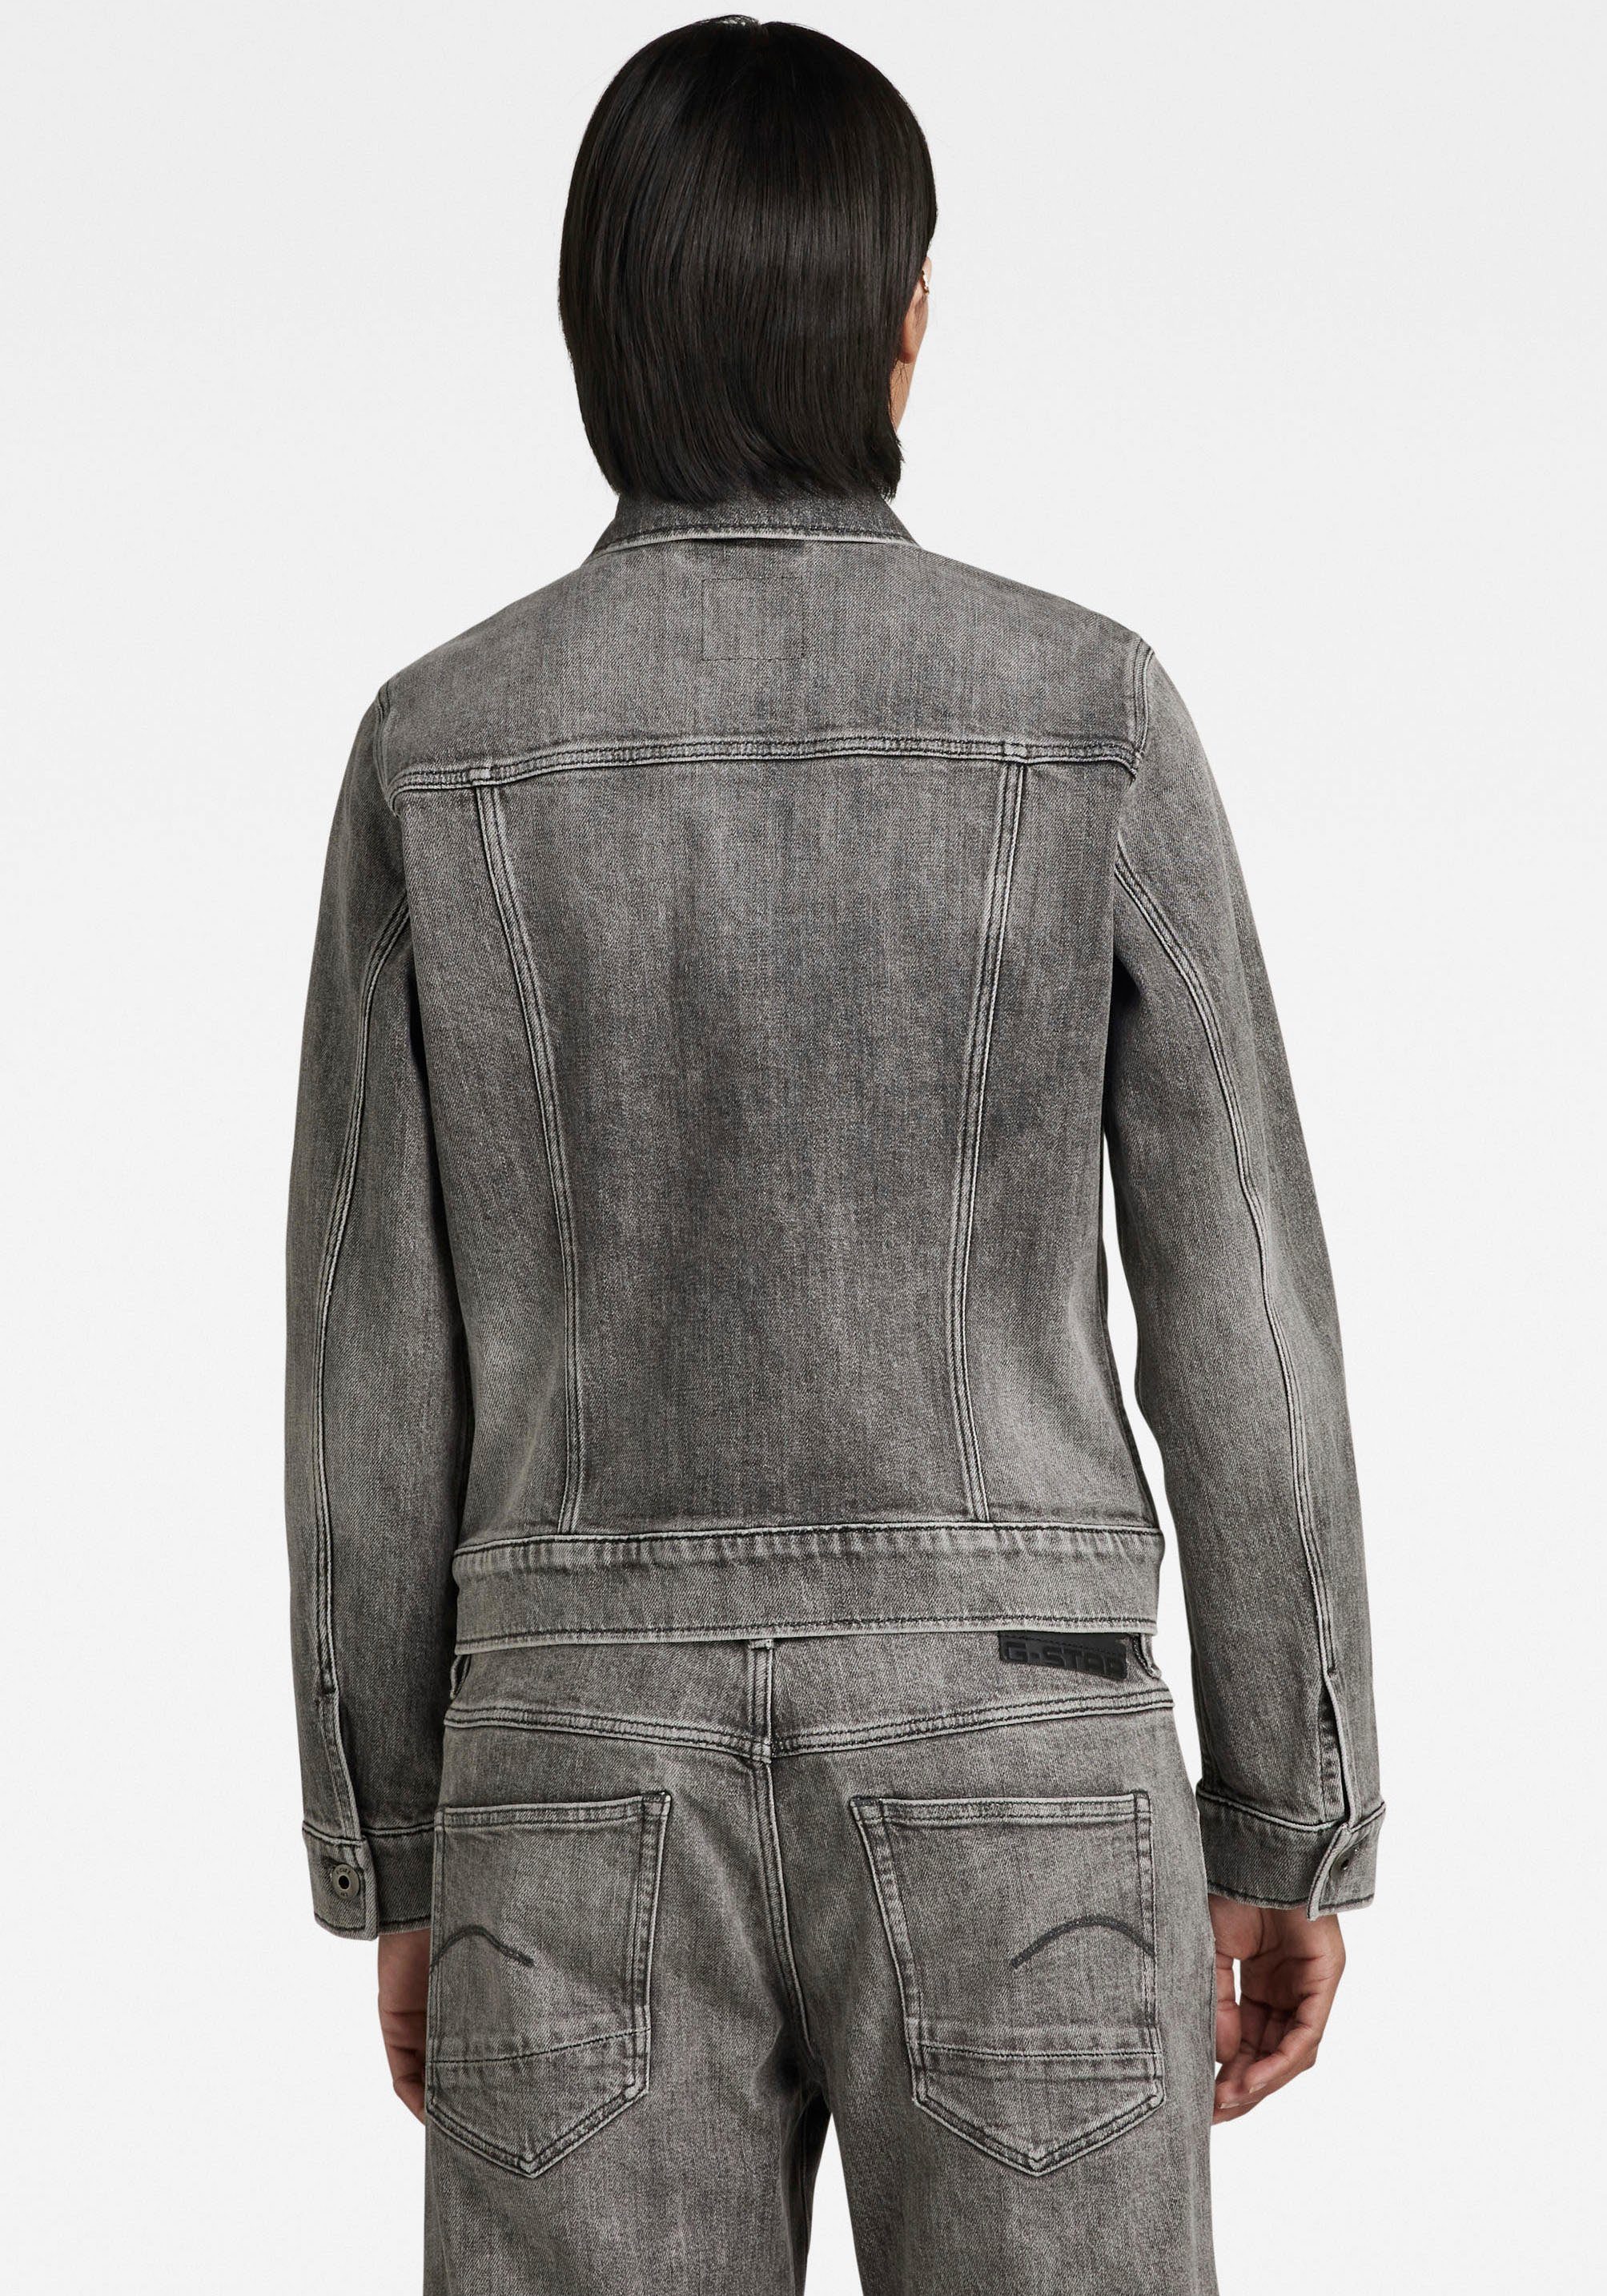 G-Star RAW Jeansjacke Arc 3D Ösenknöpfen mit aufgesetzten mit Pattentaschen carbon jacket faded